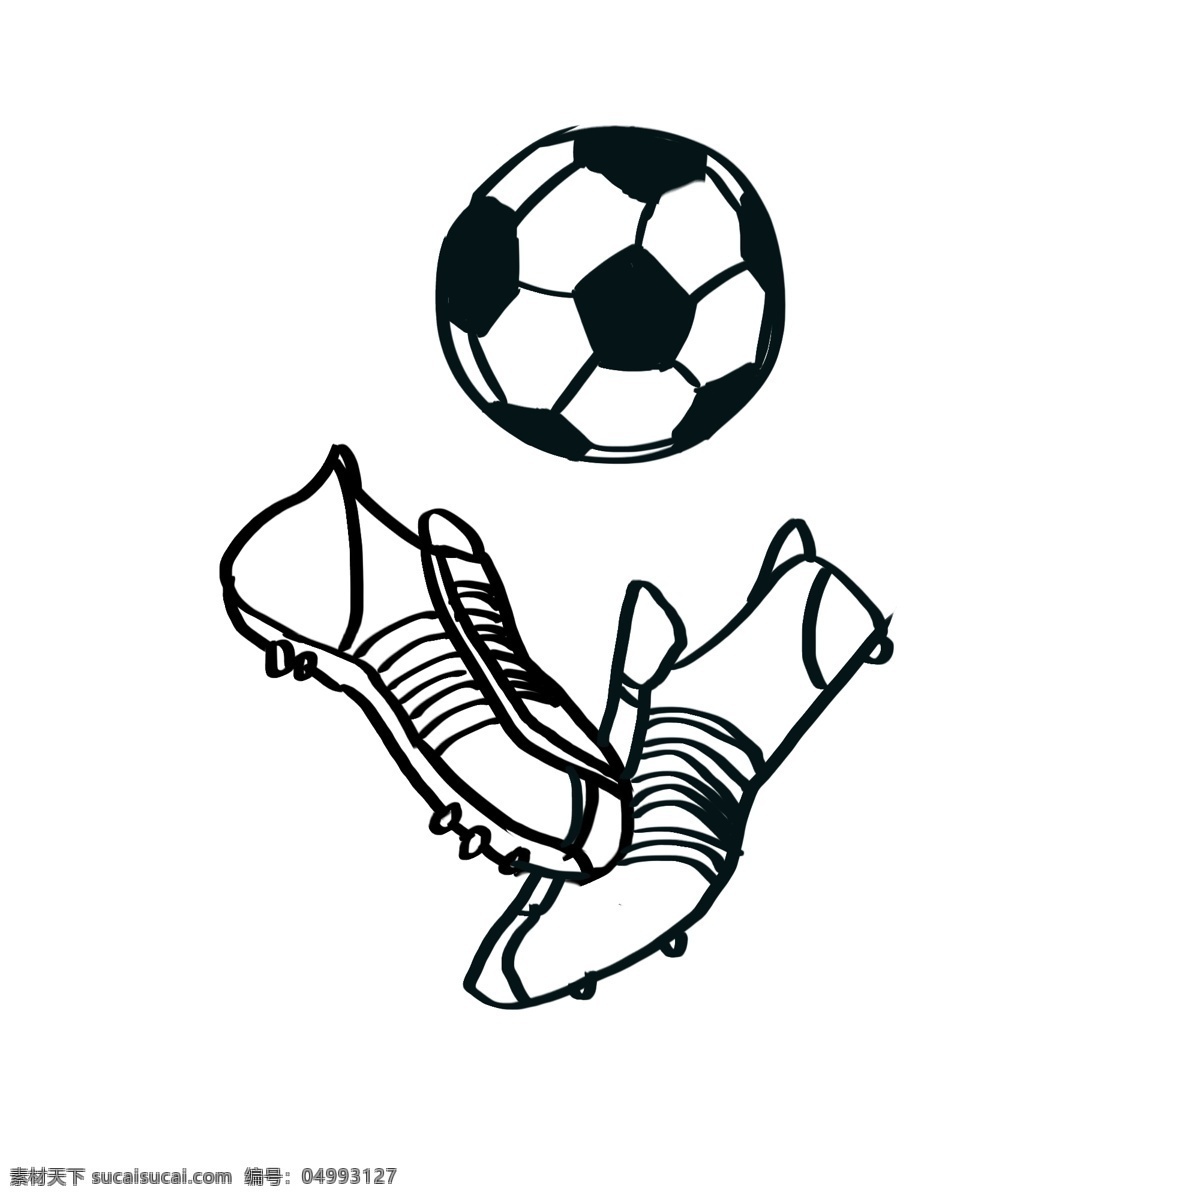 足球 足球鞋 简 笔画 足球简笔画 足球运动鞋 线稿图 黑色线条